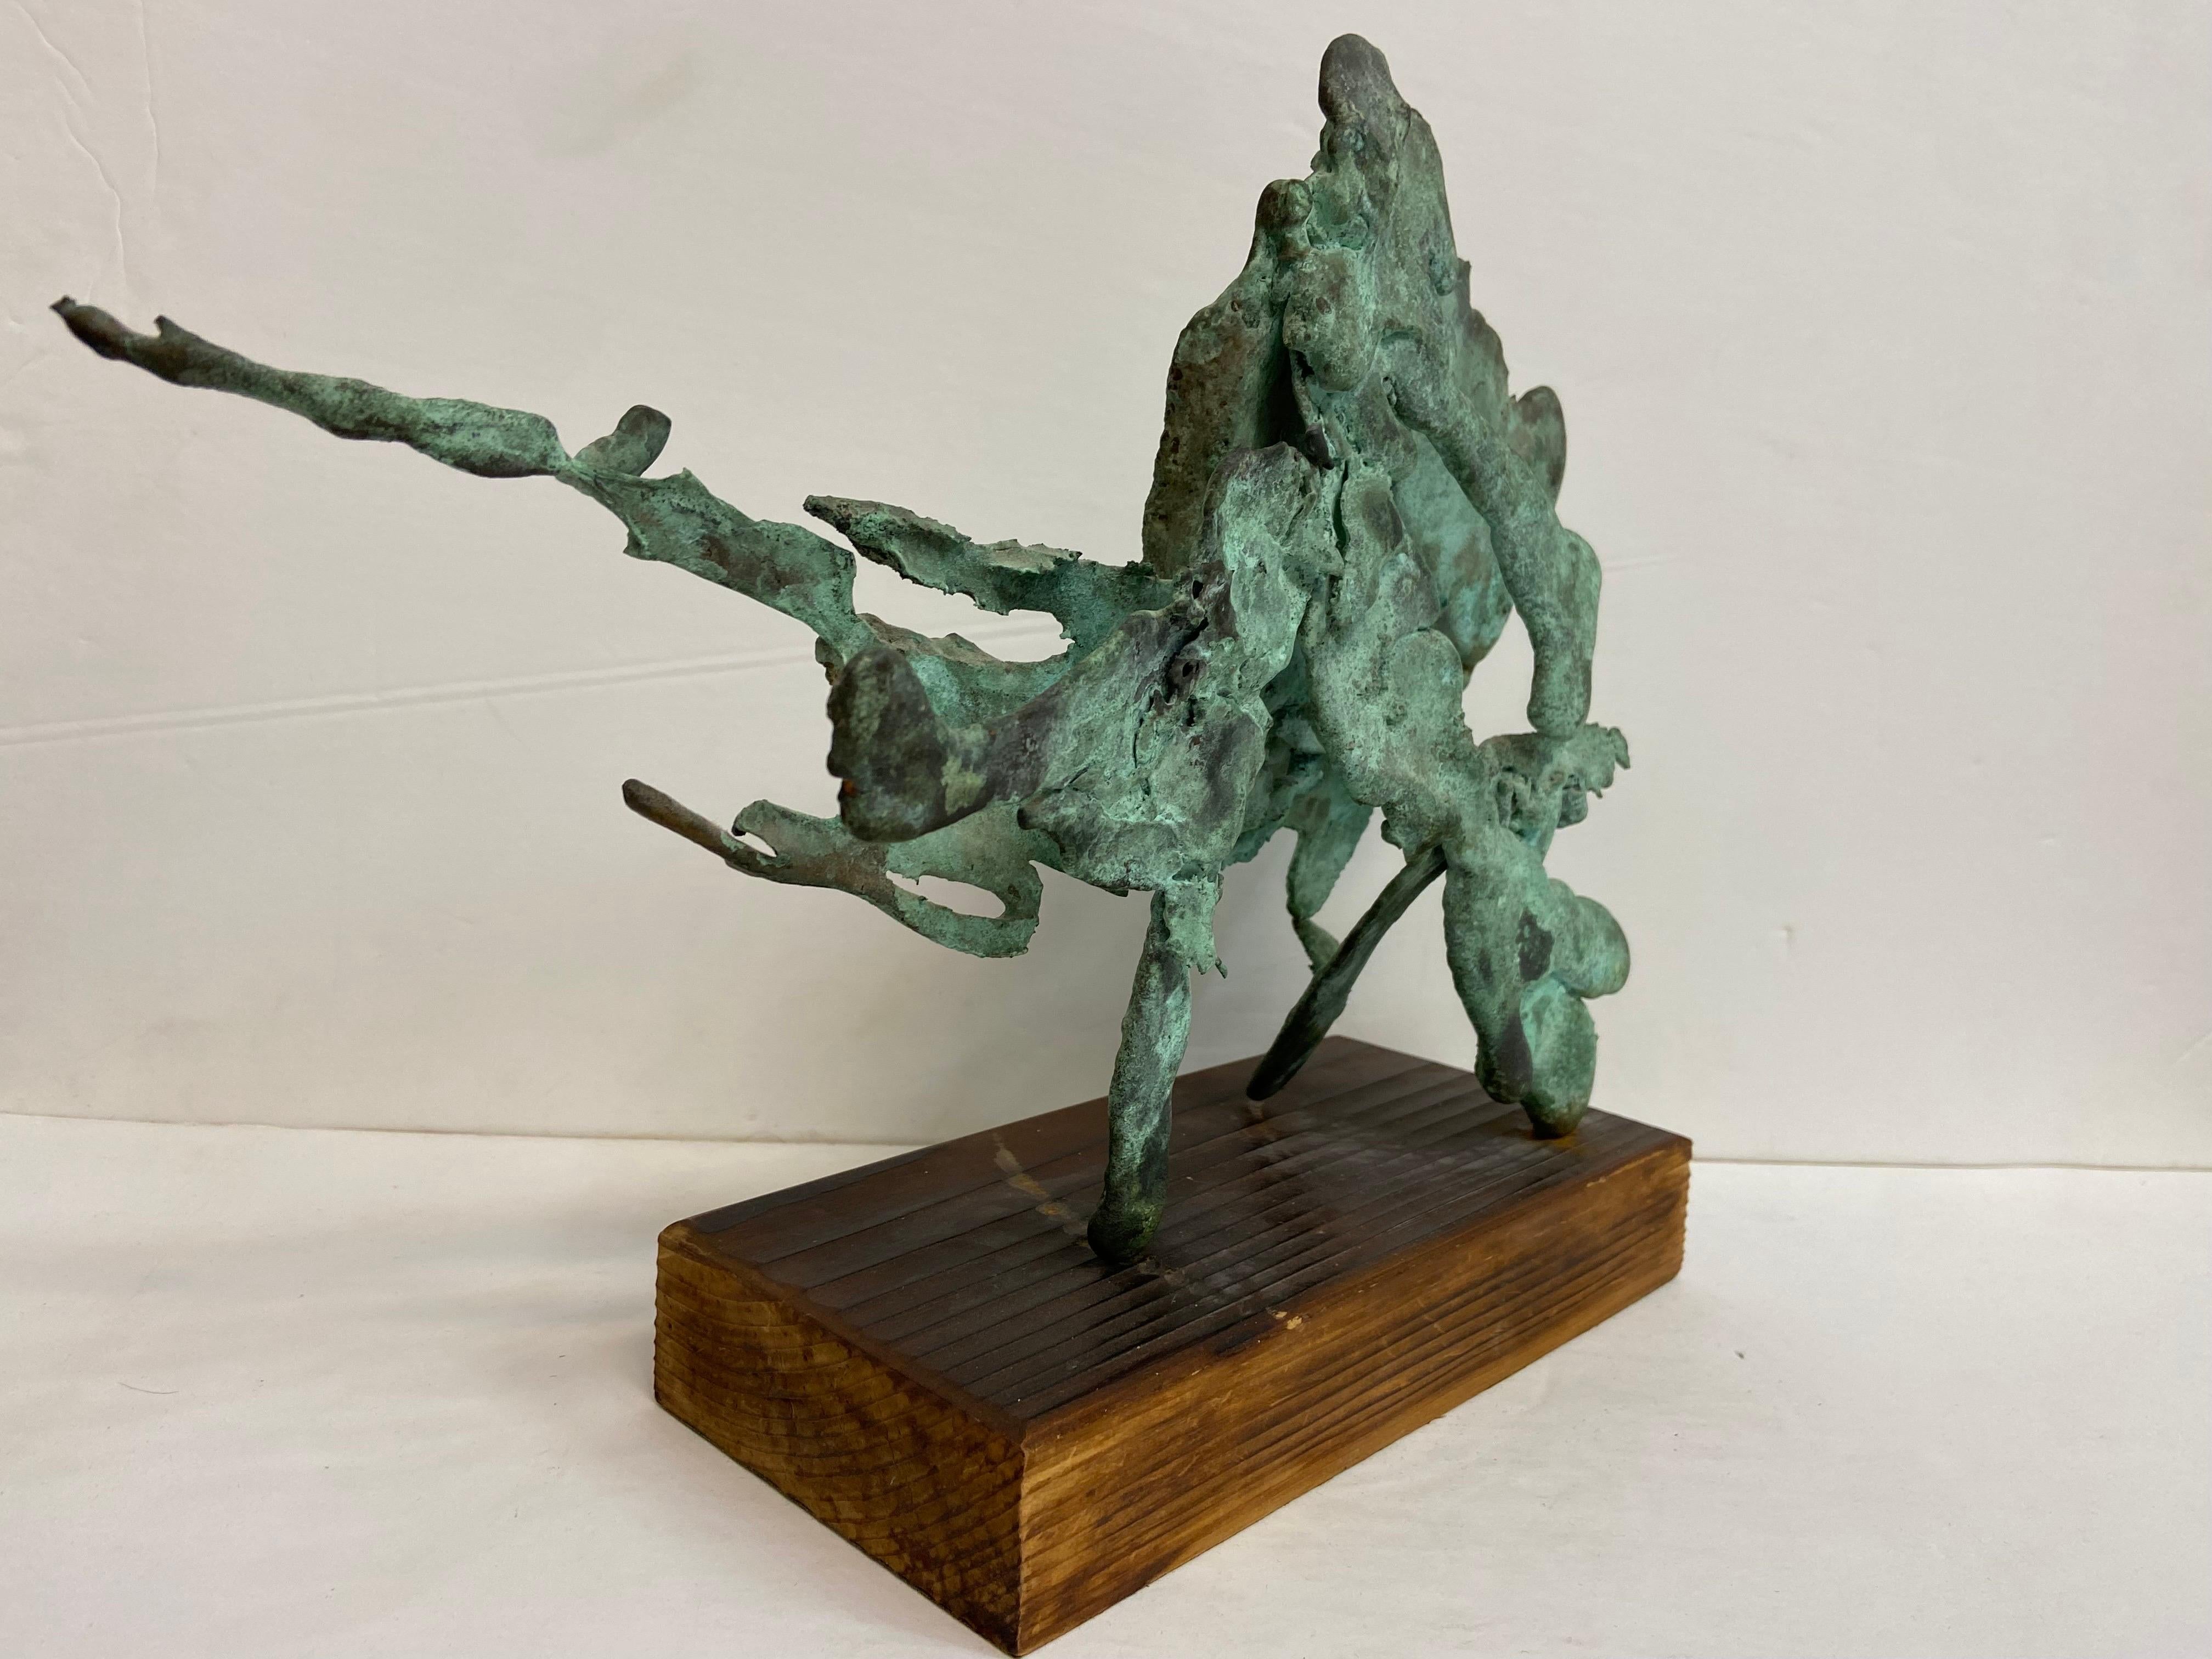 American Vintage Verdigris Patina Spill Cast Bronze Brutalist Sculpture on Wood Base